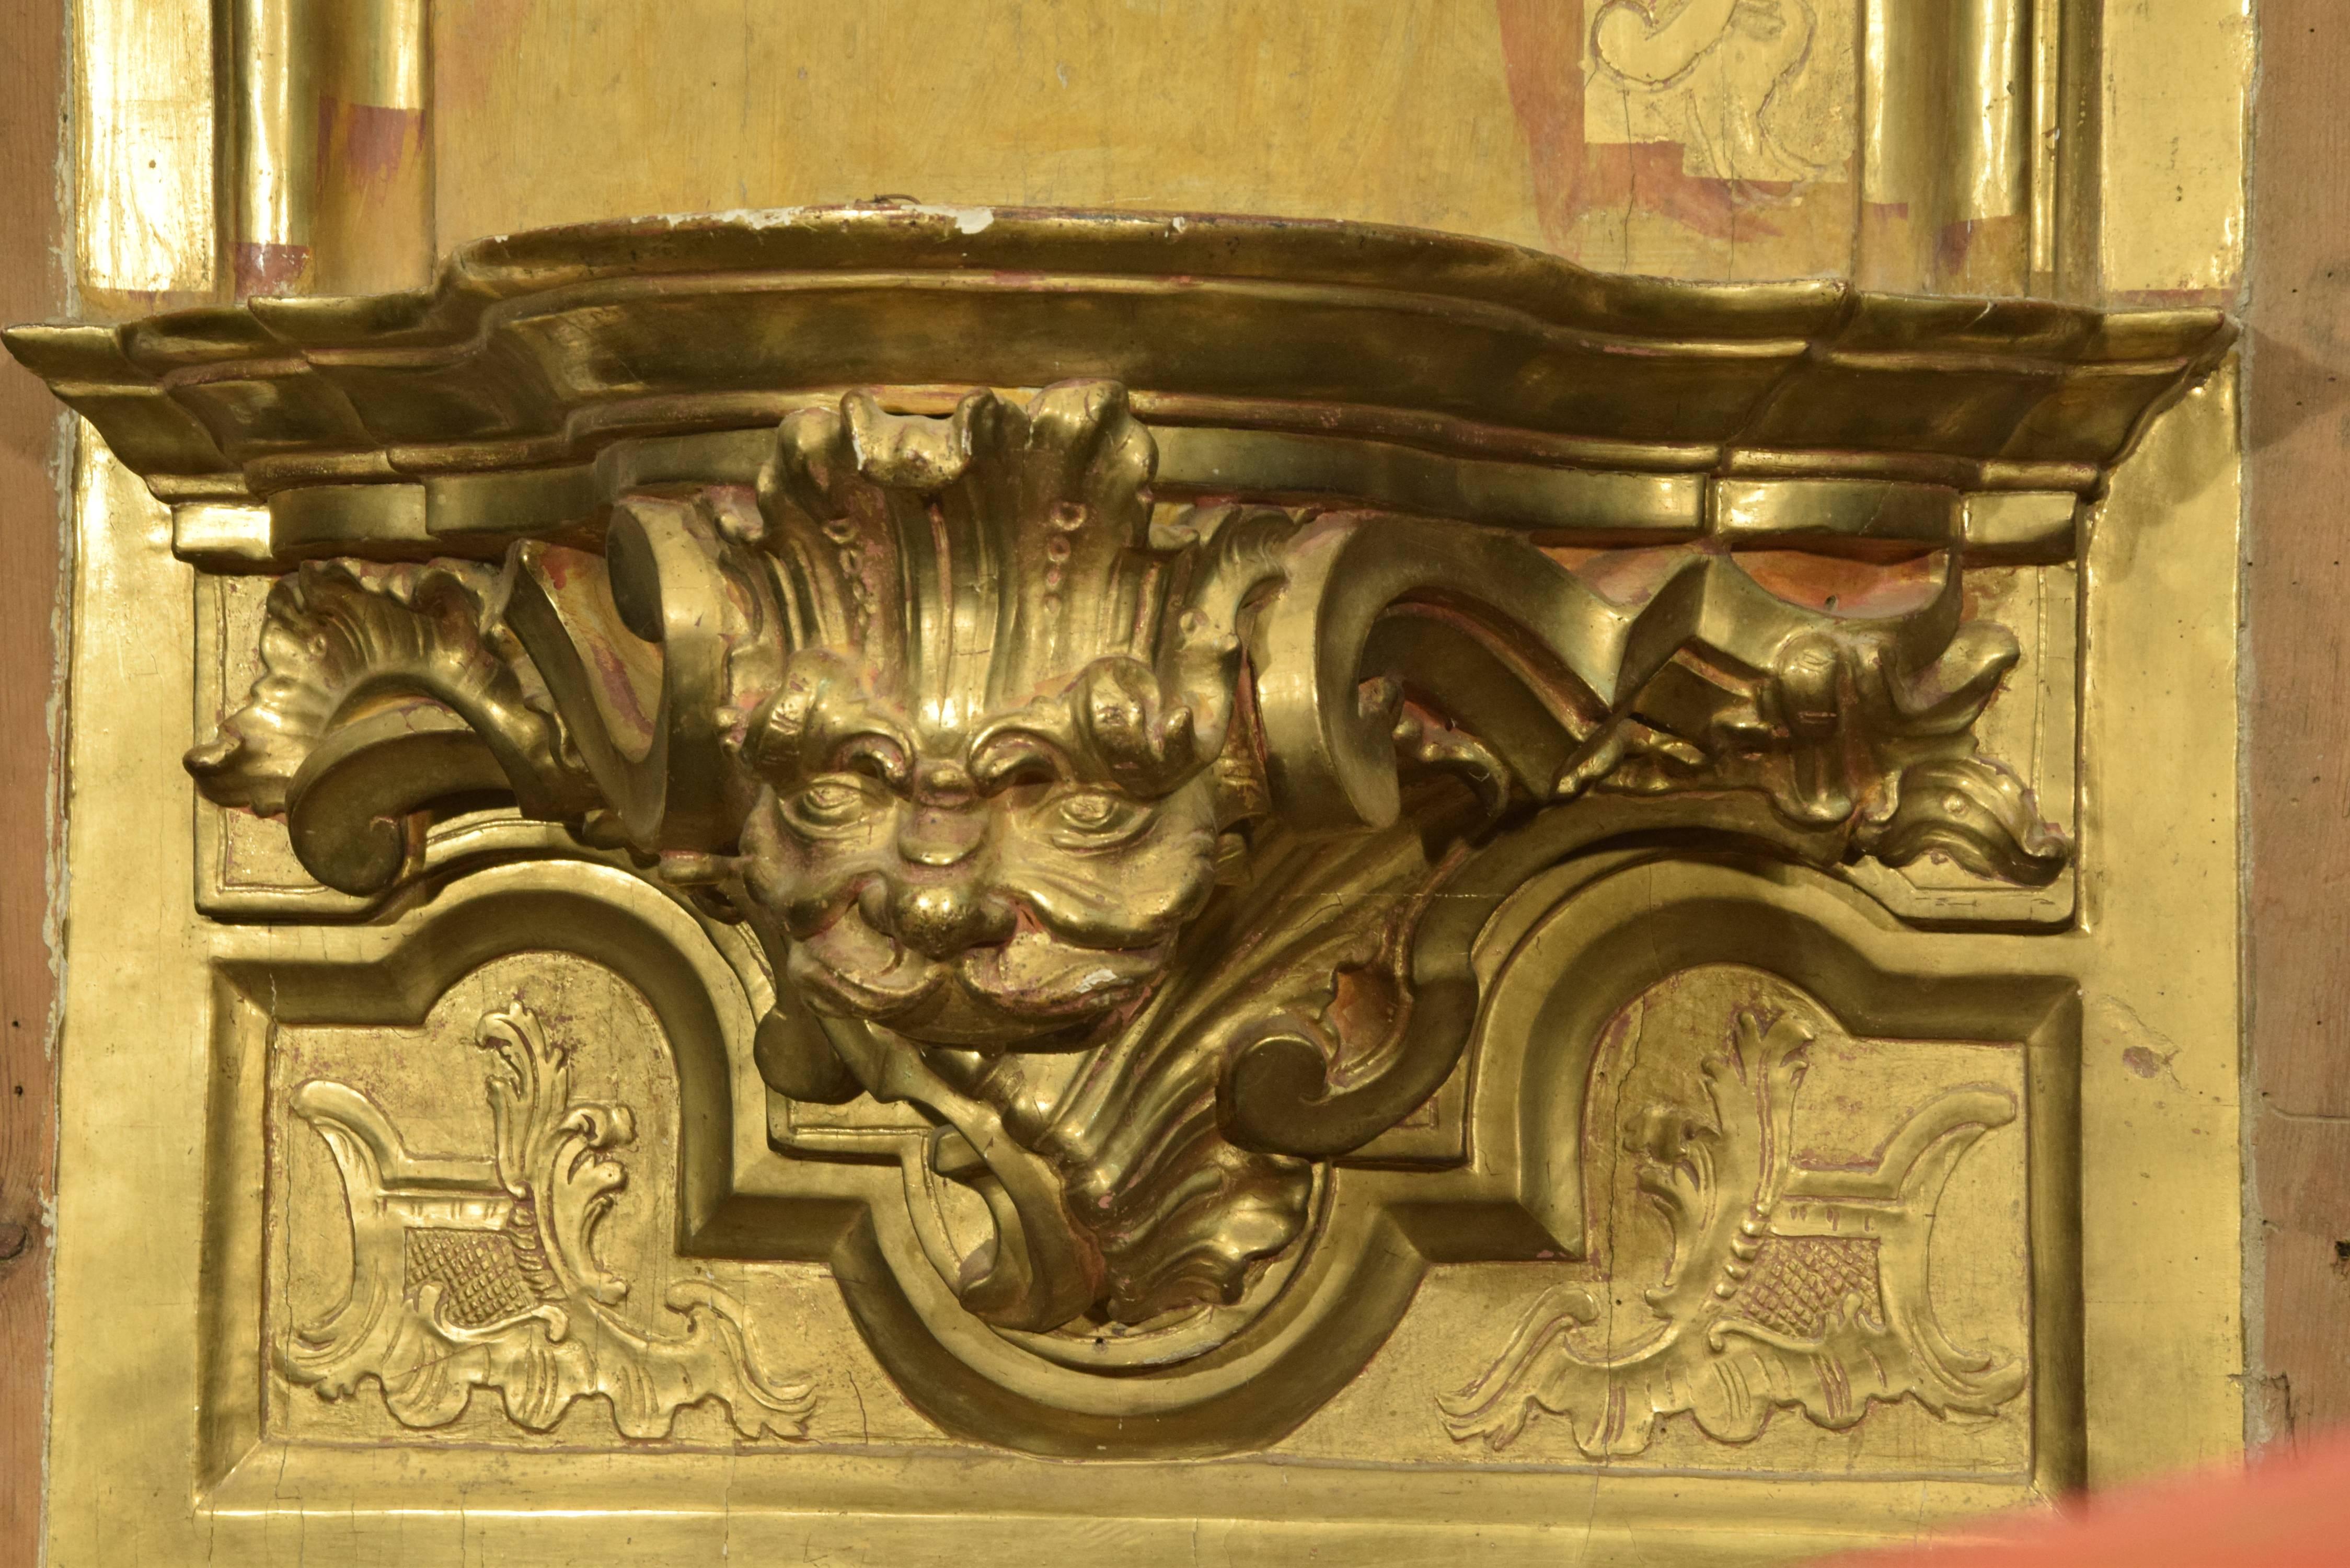 Hornacina formée d'un fond décoré de moulures et d'un support pour une sculpture décorée d'un masque et de motifs végétaux et surmontée d'un fronton fendu avec un motif central travaillé sur son fond ressemblant à une étoffe. Des cornes d'abondance